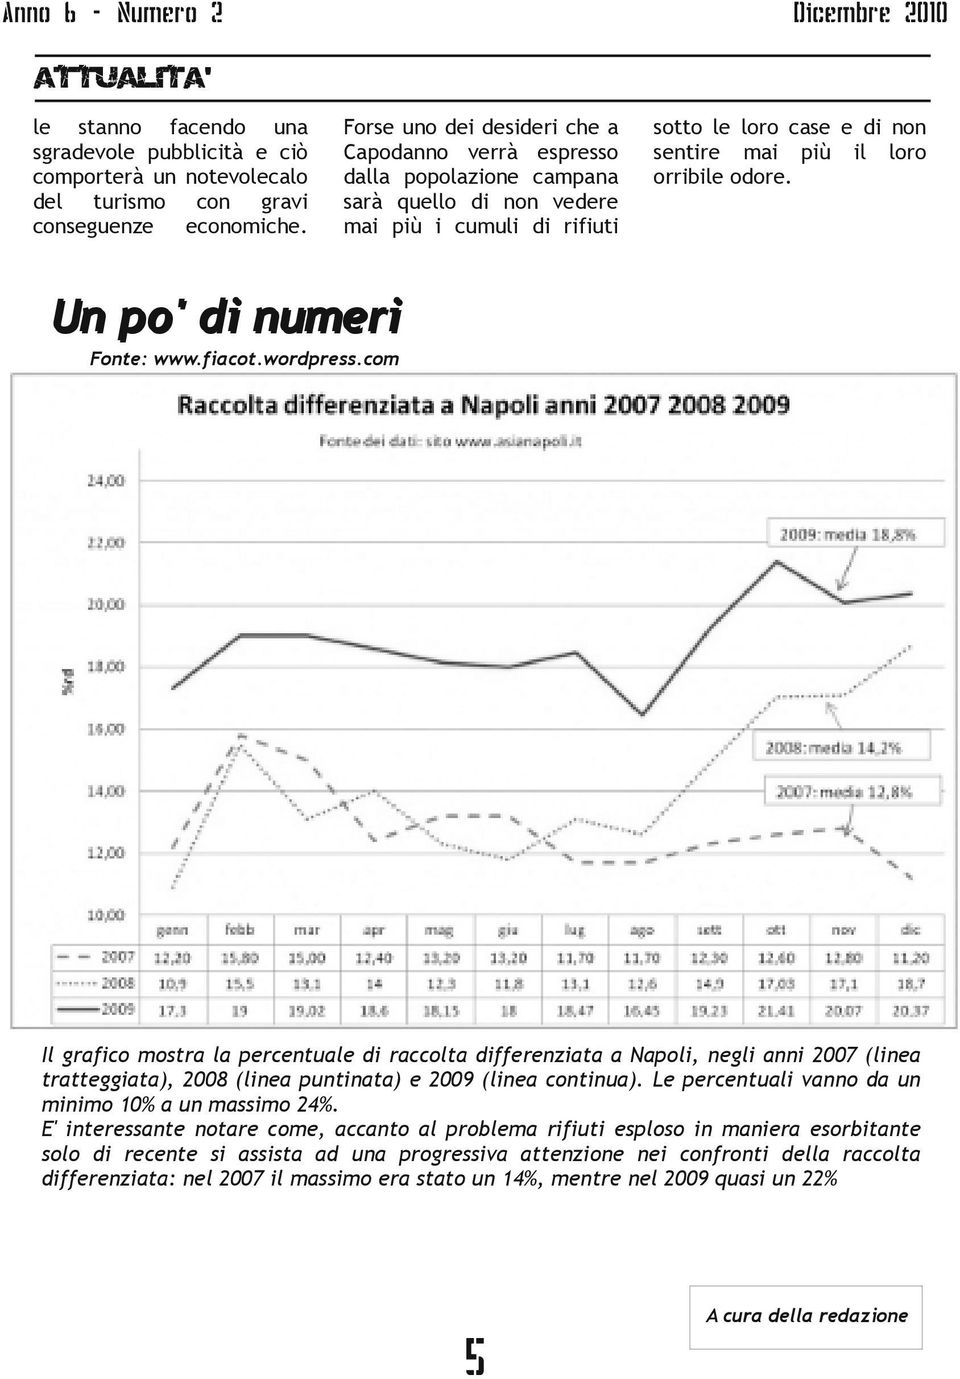 U n p o ' d i nu m r i Font: www.ficot.wordprss.com Il grfico mostr prcntul rccolt ffrnzit Npoli, ngli nni 2007 (lin trttggit), 2008 (lin puntint) 2009 (lin continu).